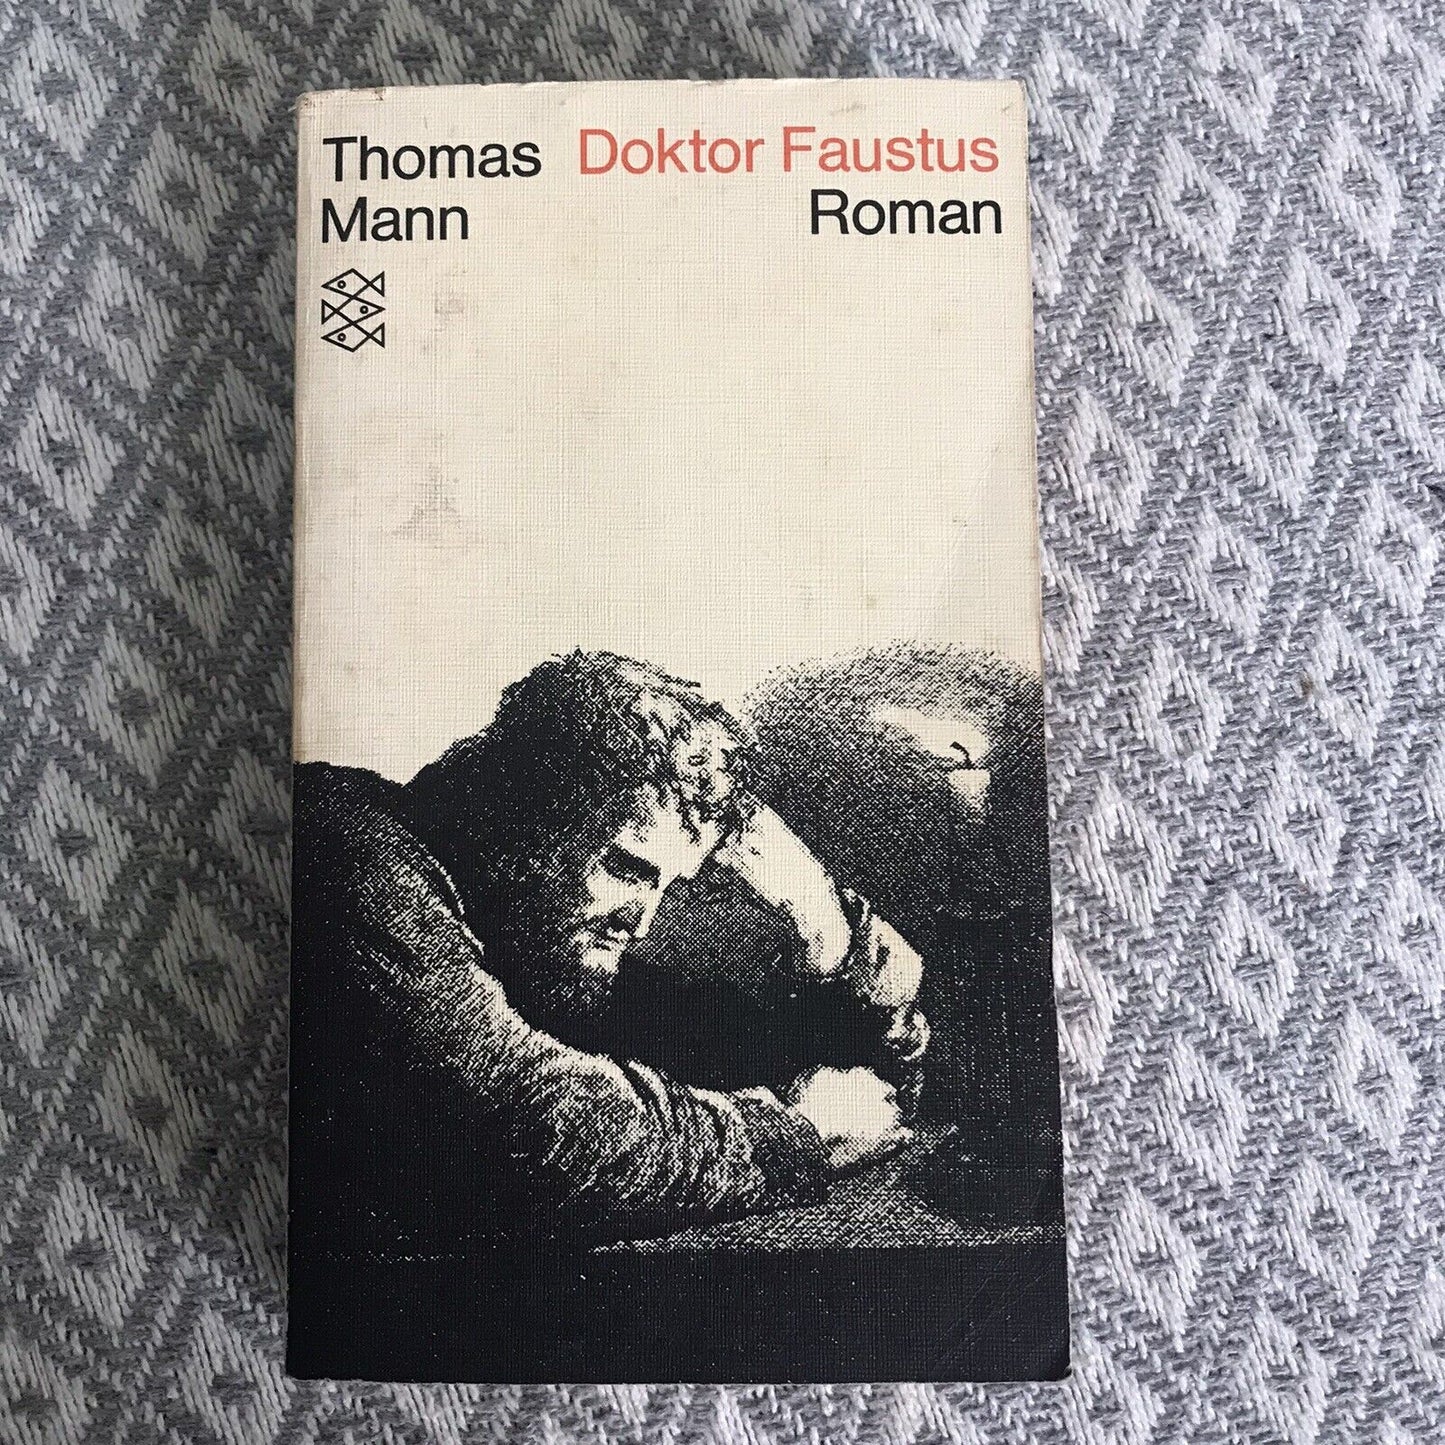 1975 Doktor Faustus - Thomas Mann (German) Fischer Taschenbücher